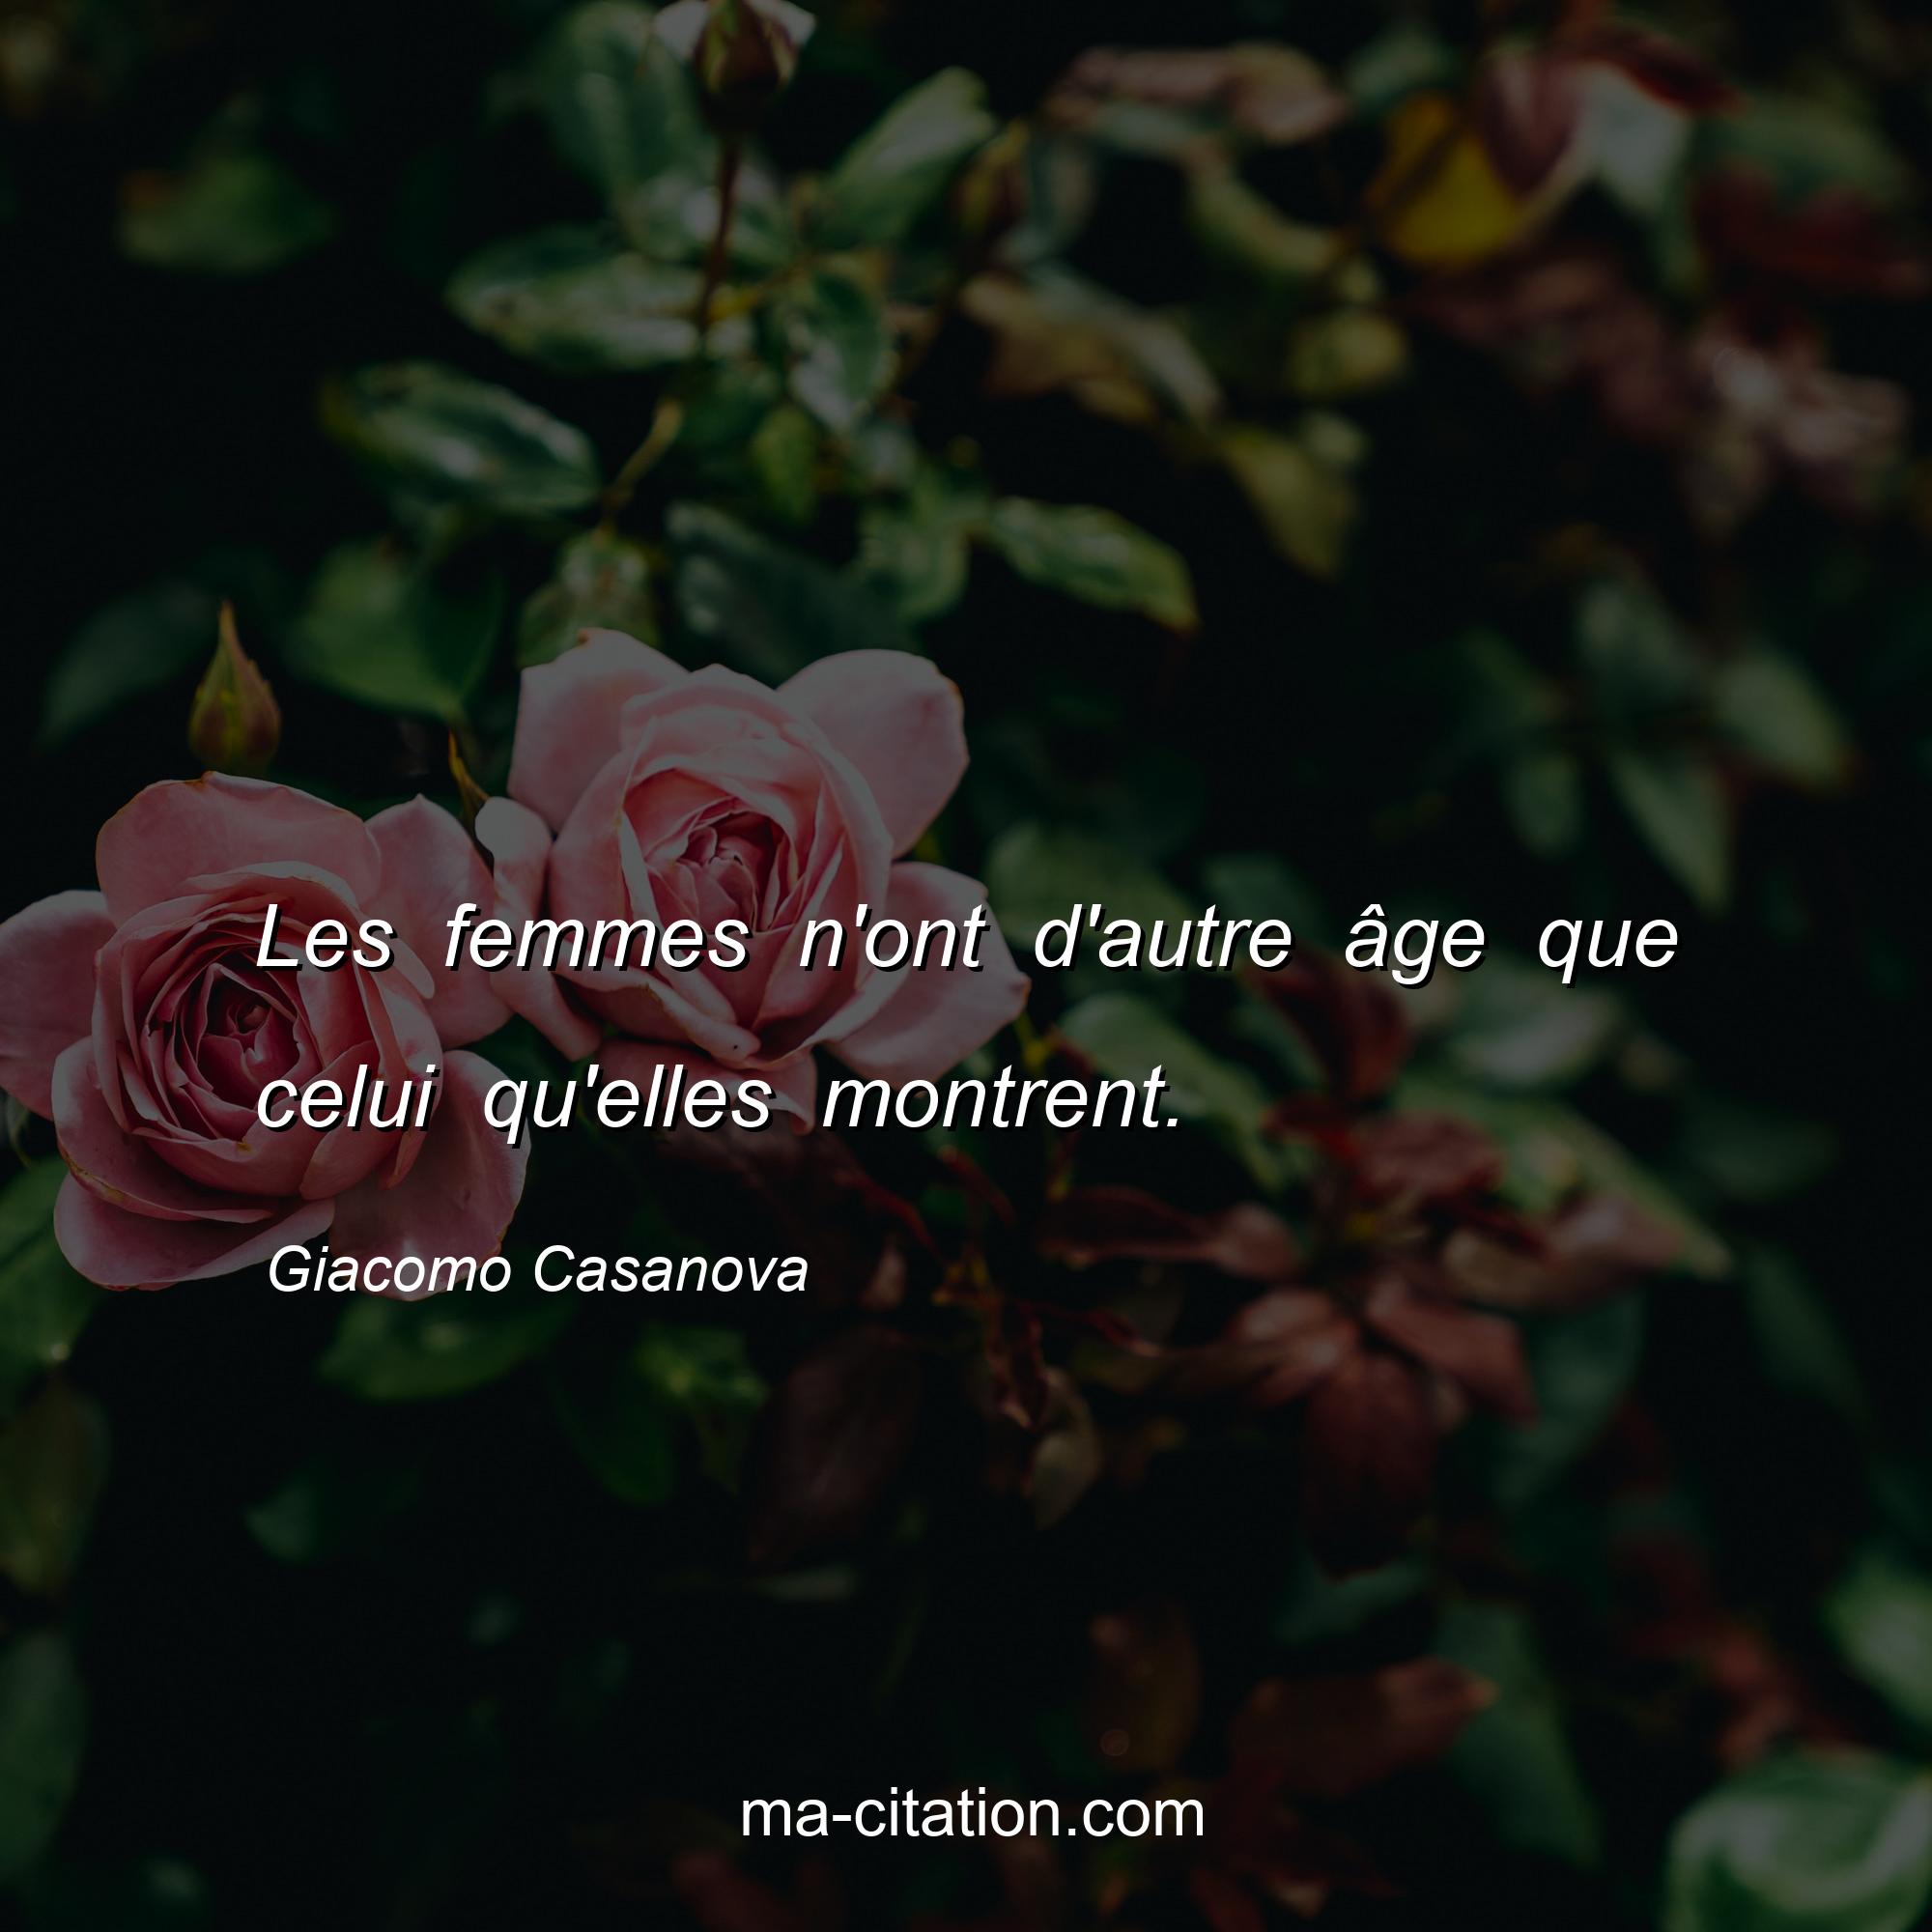 Giacomo Casanova : Les femmes n'ont d'autre âge que celui qu'elles montrent.